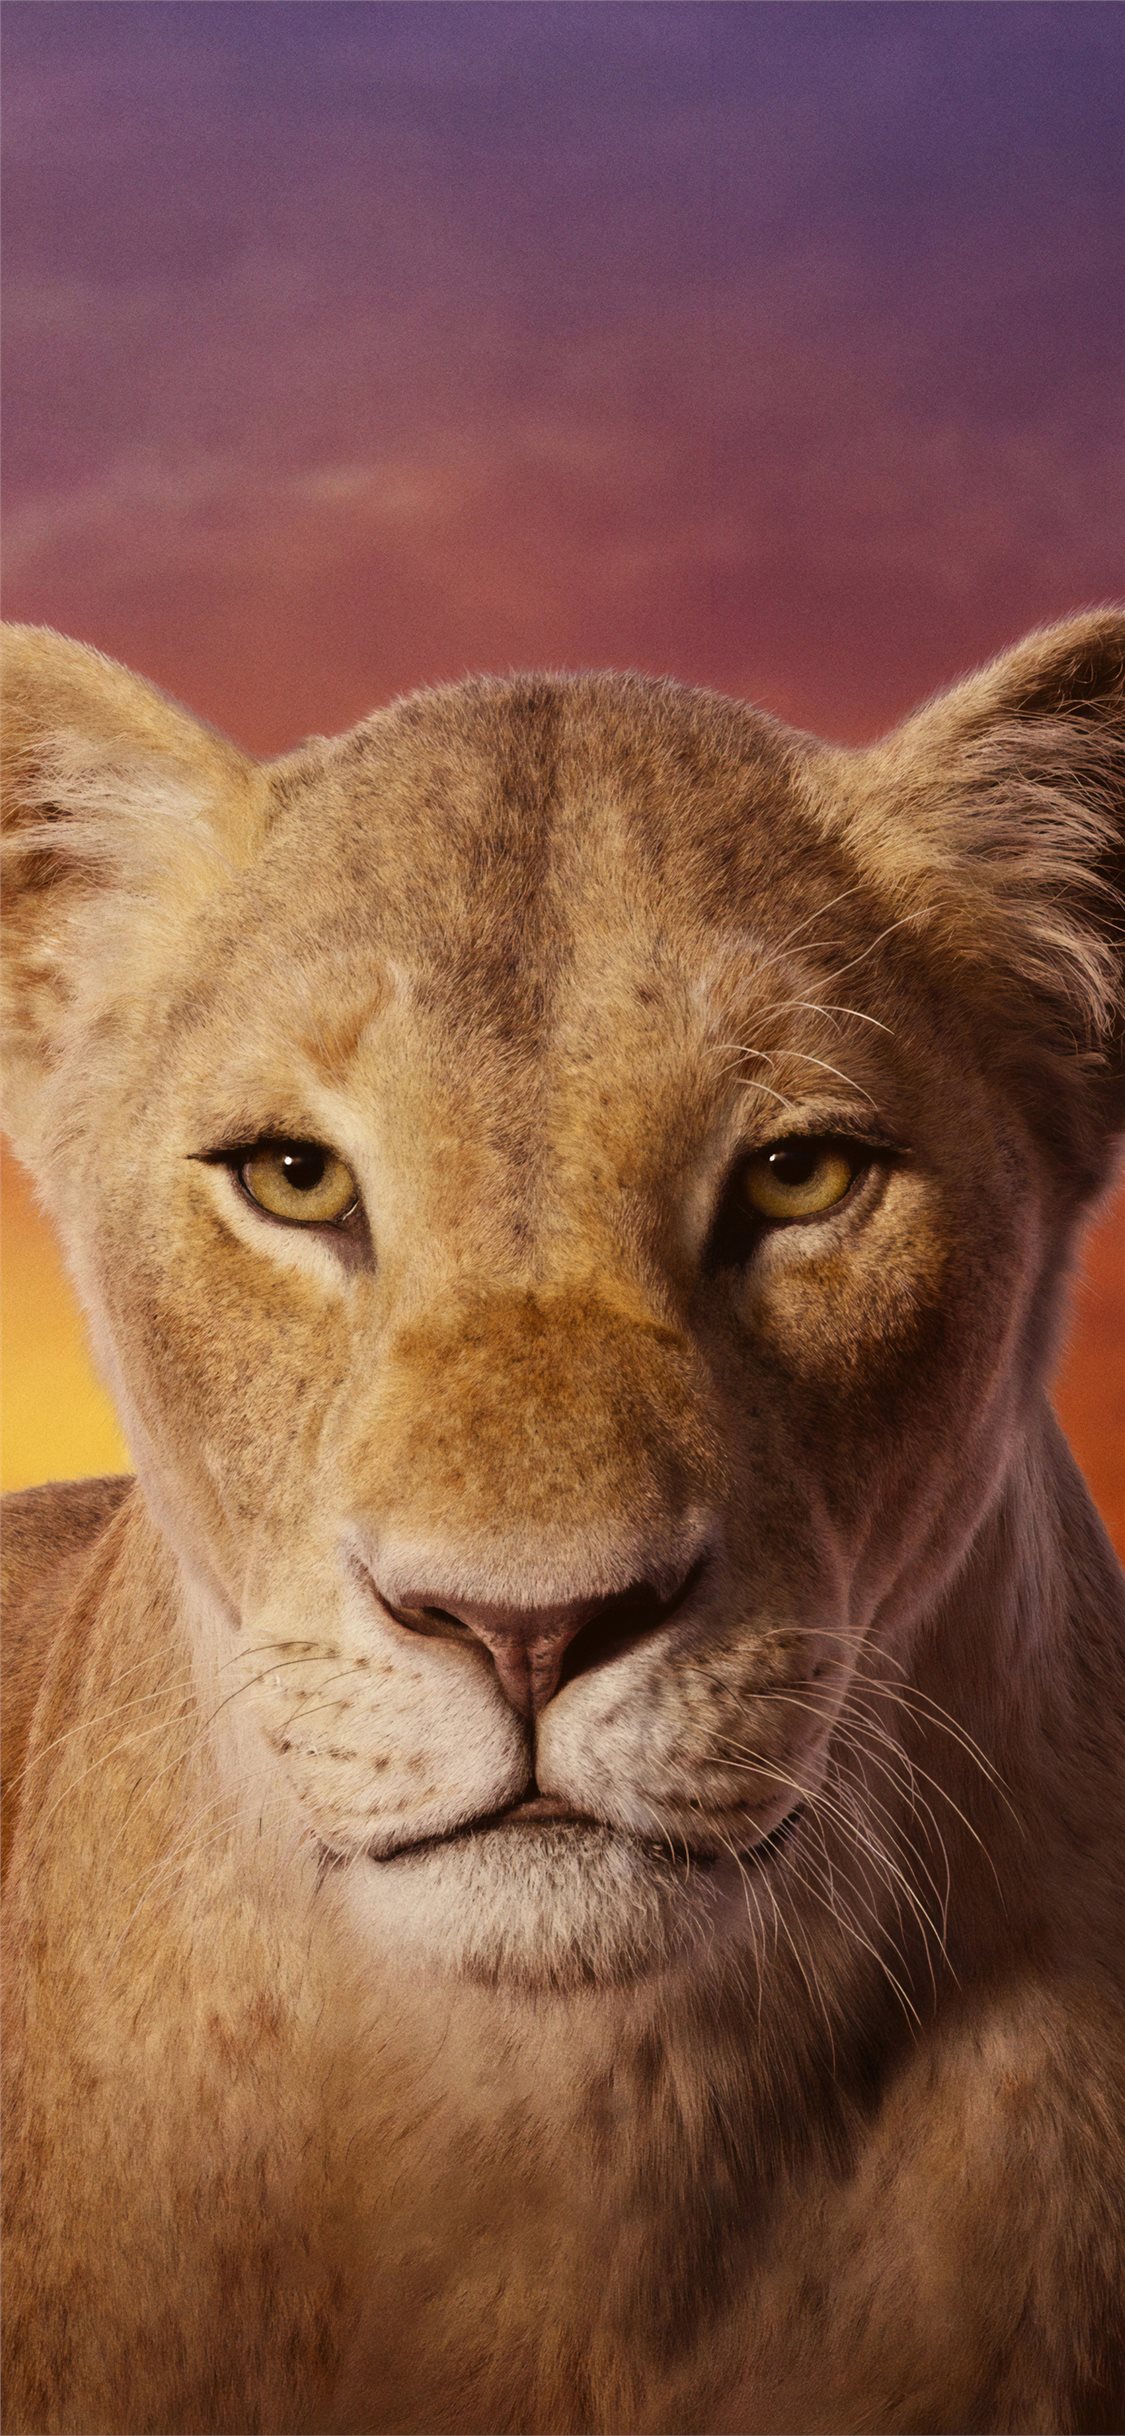 Beyonce As Nala The Lion King 4k iPhone X Wallpaper